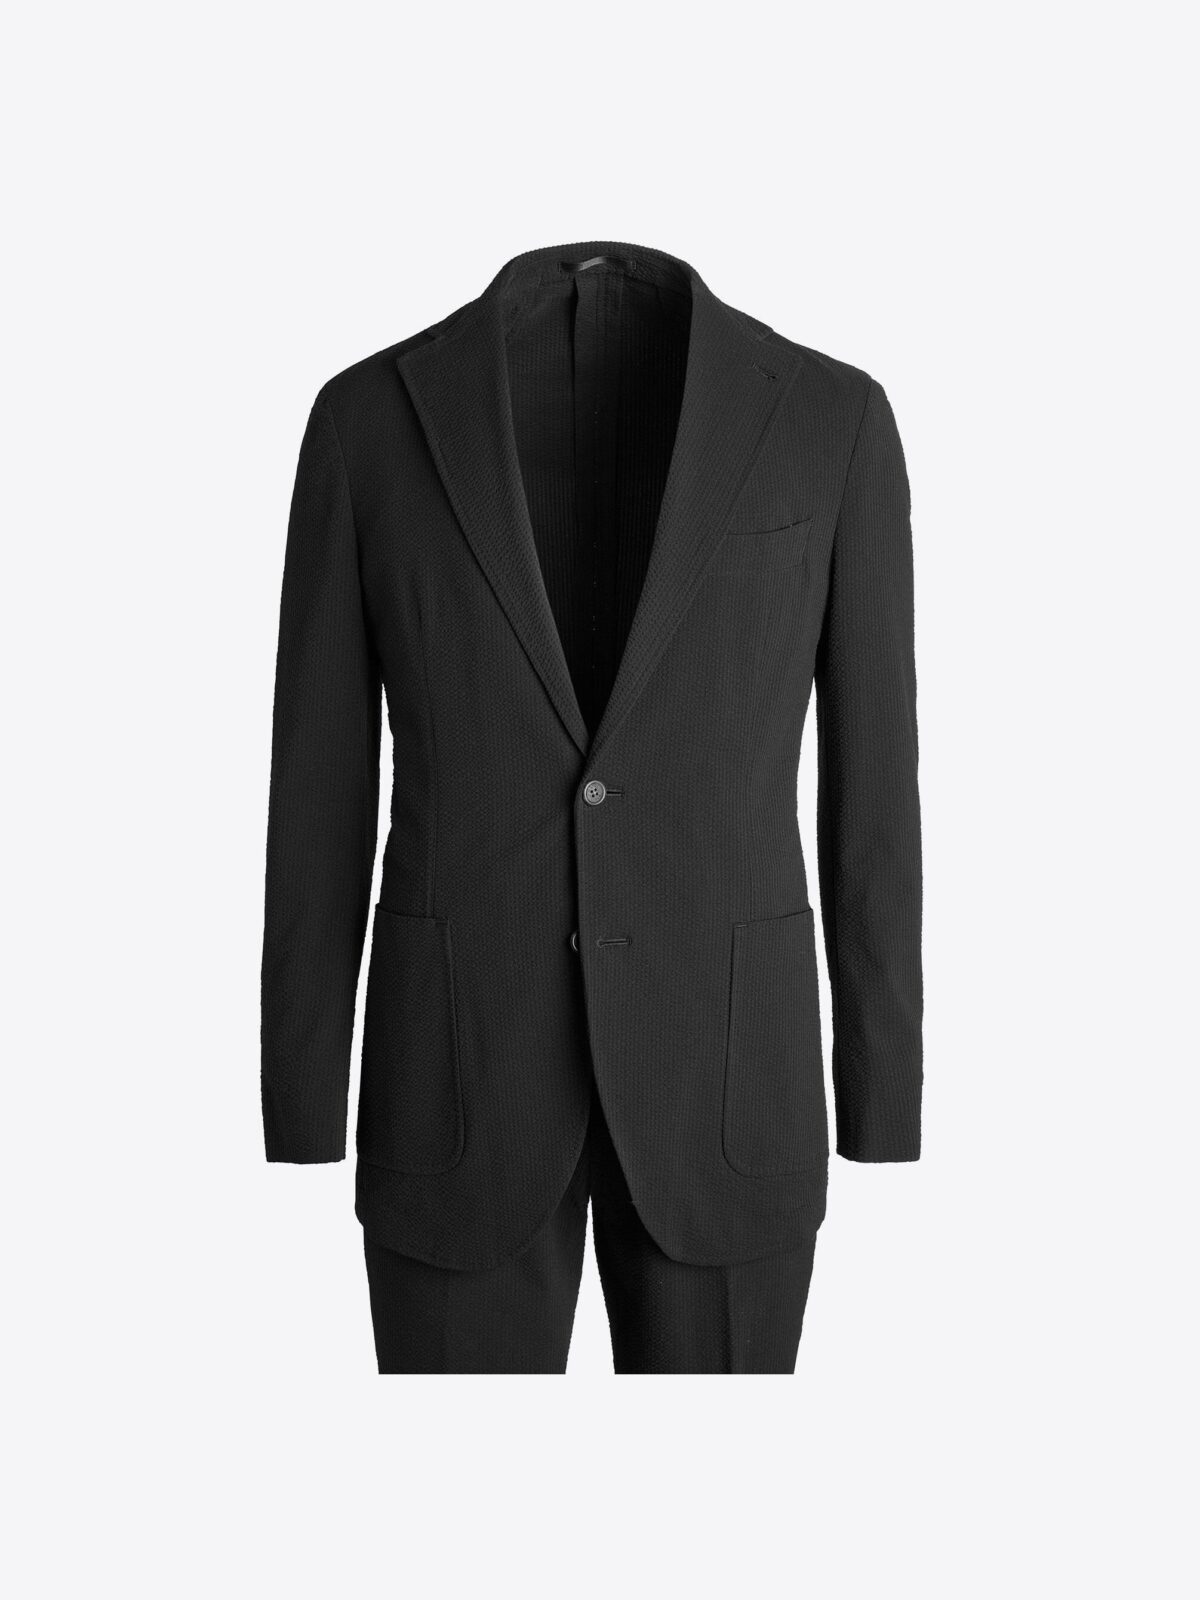 seersucker suit black